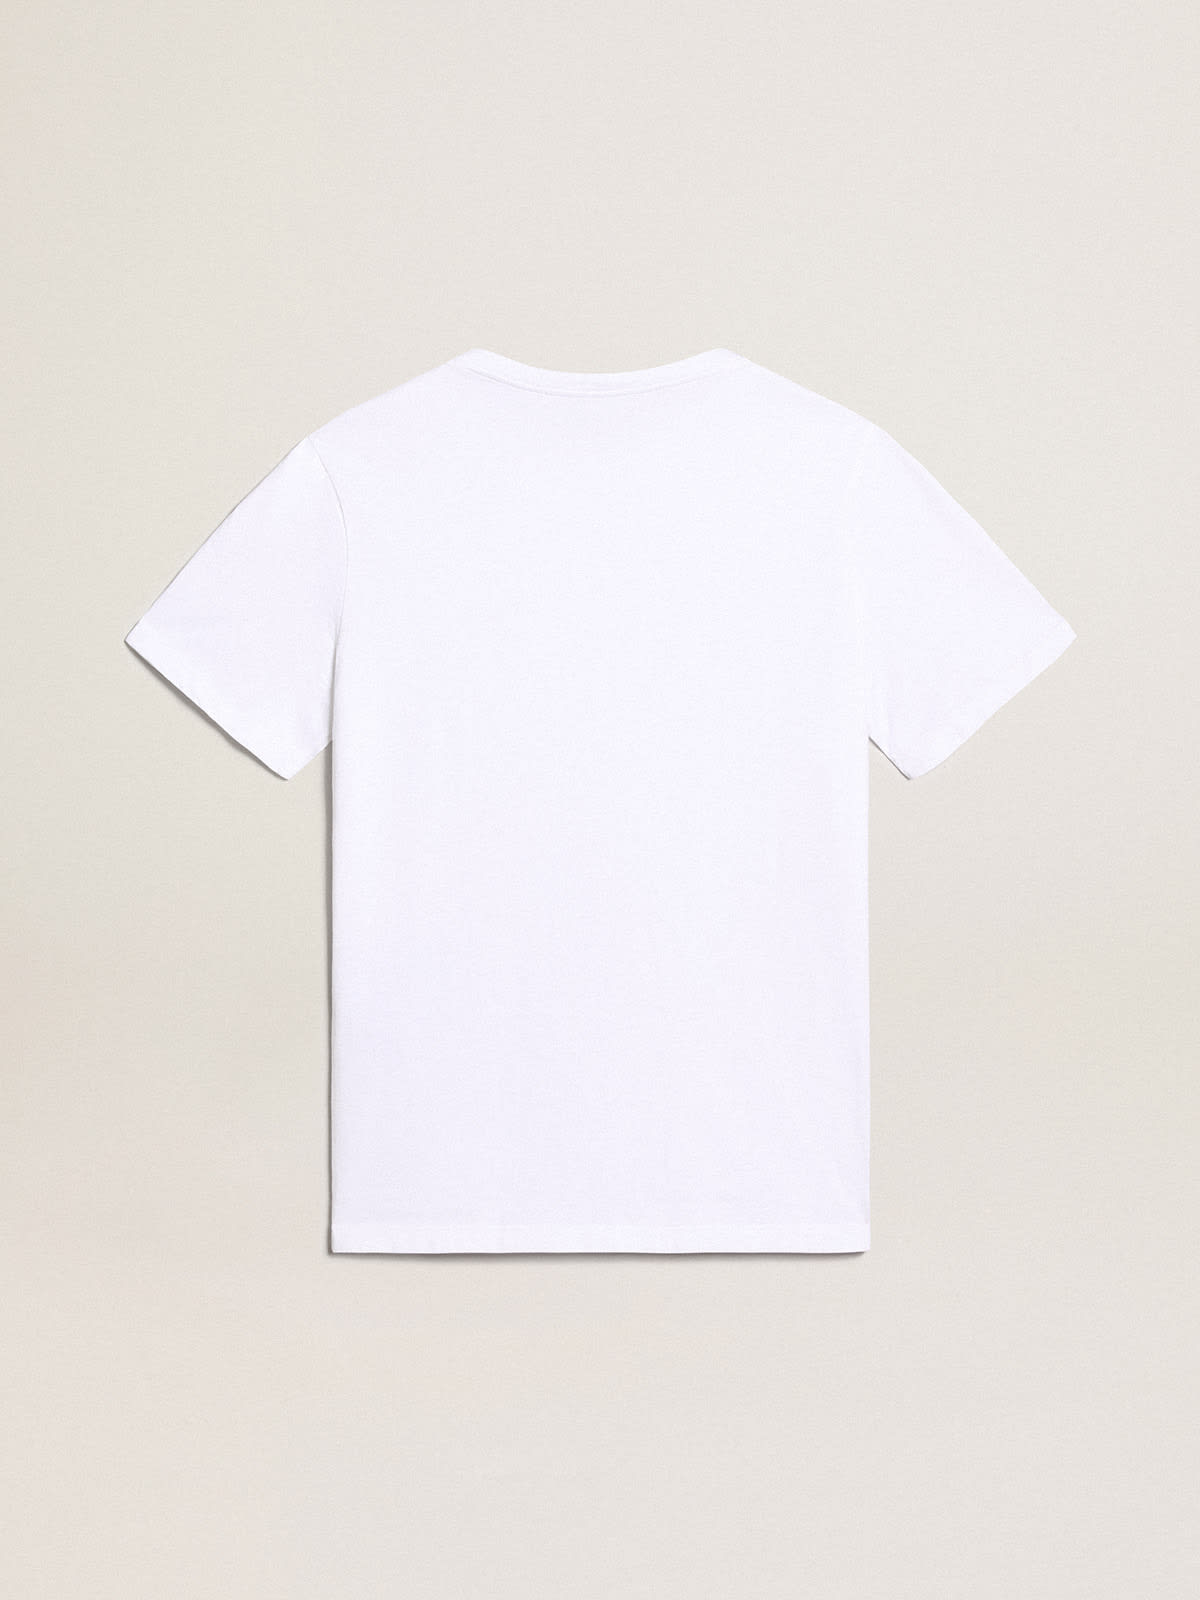 Golden Goose - T-shirt blanc avec logo noir contrasté sur le devant in 